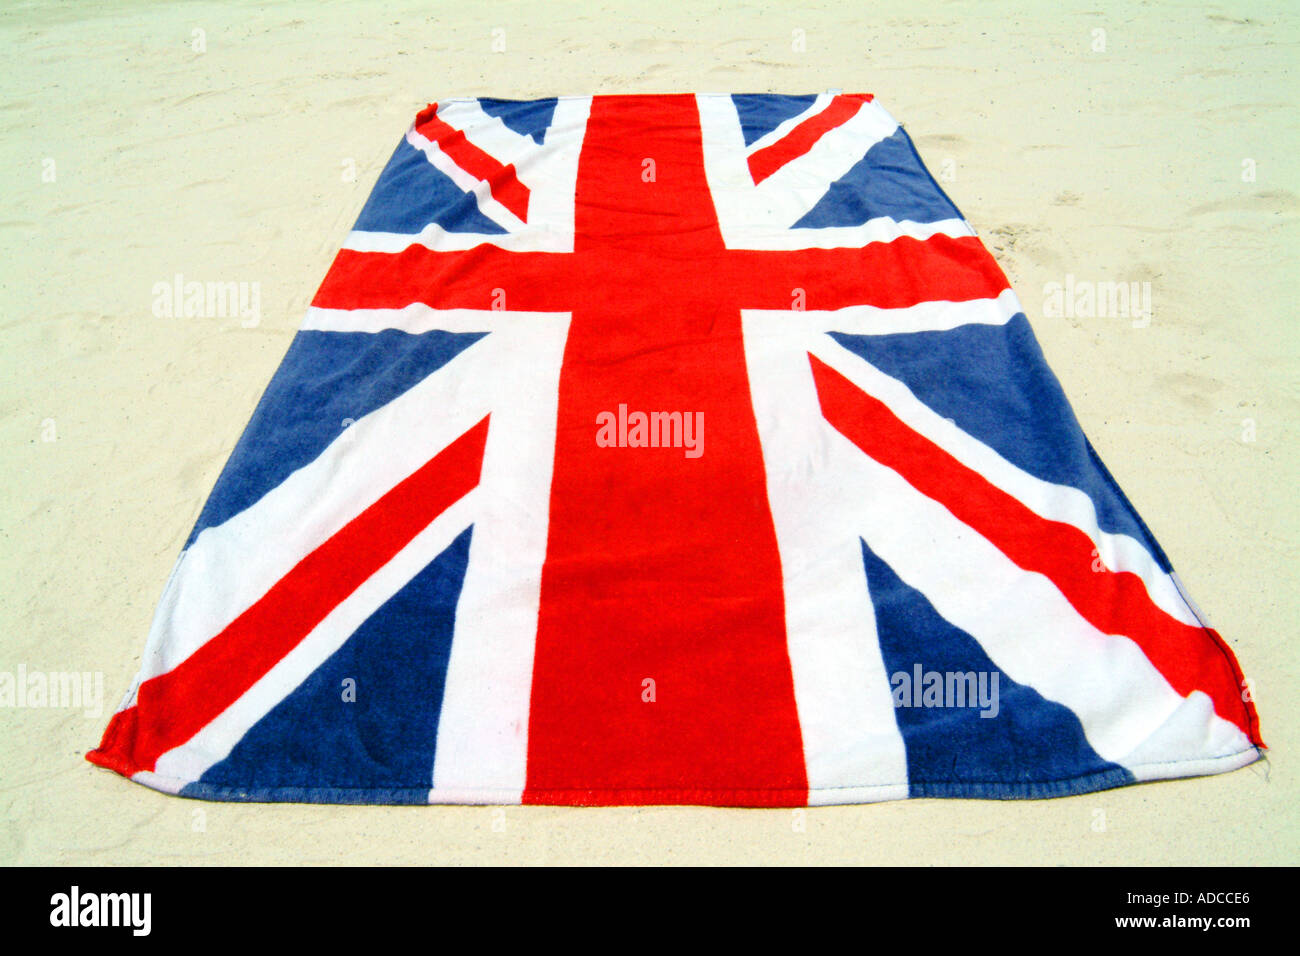 Anschluß-Markierungsfahne Großbritannien Briten im Ausland Union Jack  Handtuch Urlaub Sommer Sonne Tag Tageslicht generische Reisen Tourismus  britische brita Stockfotografie - Alamy